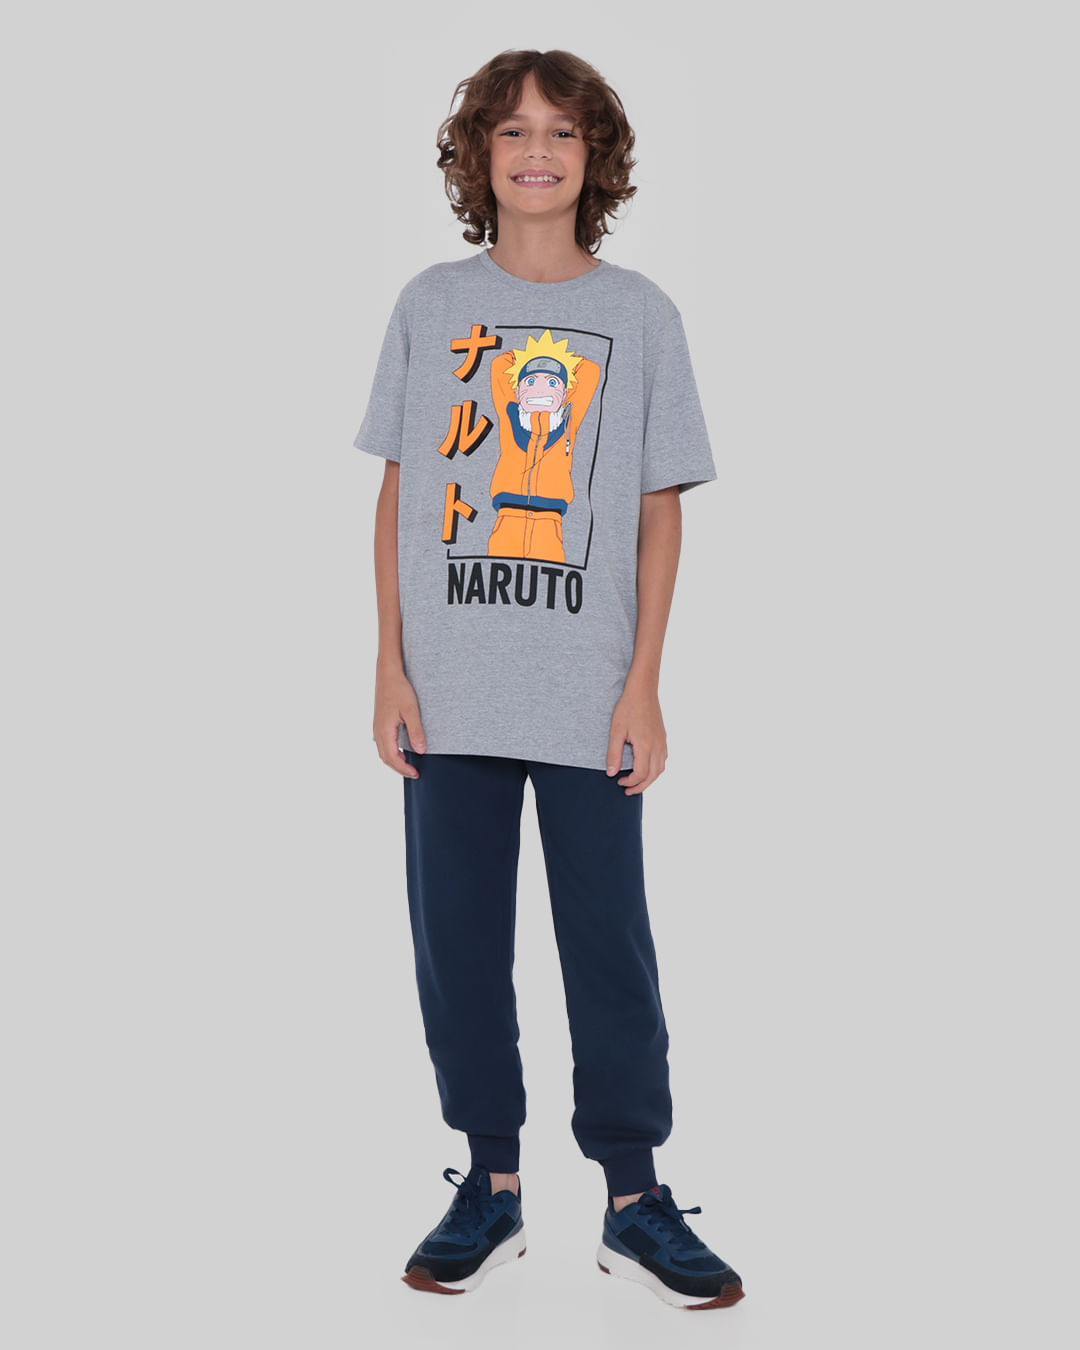 Camiseta Juvenil Naruto Mescla Cinza